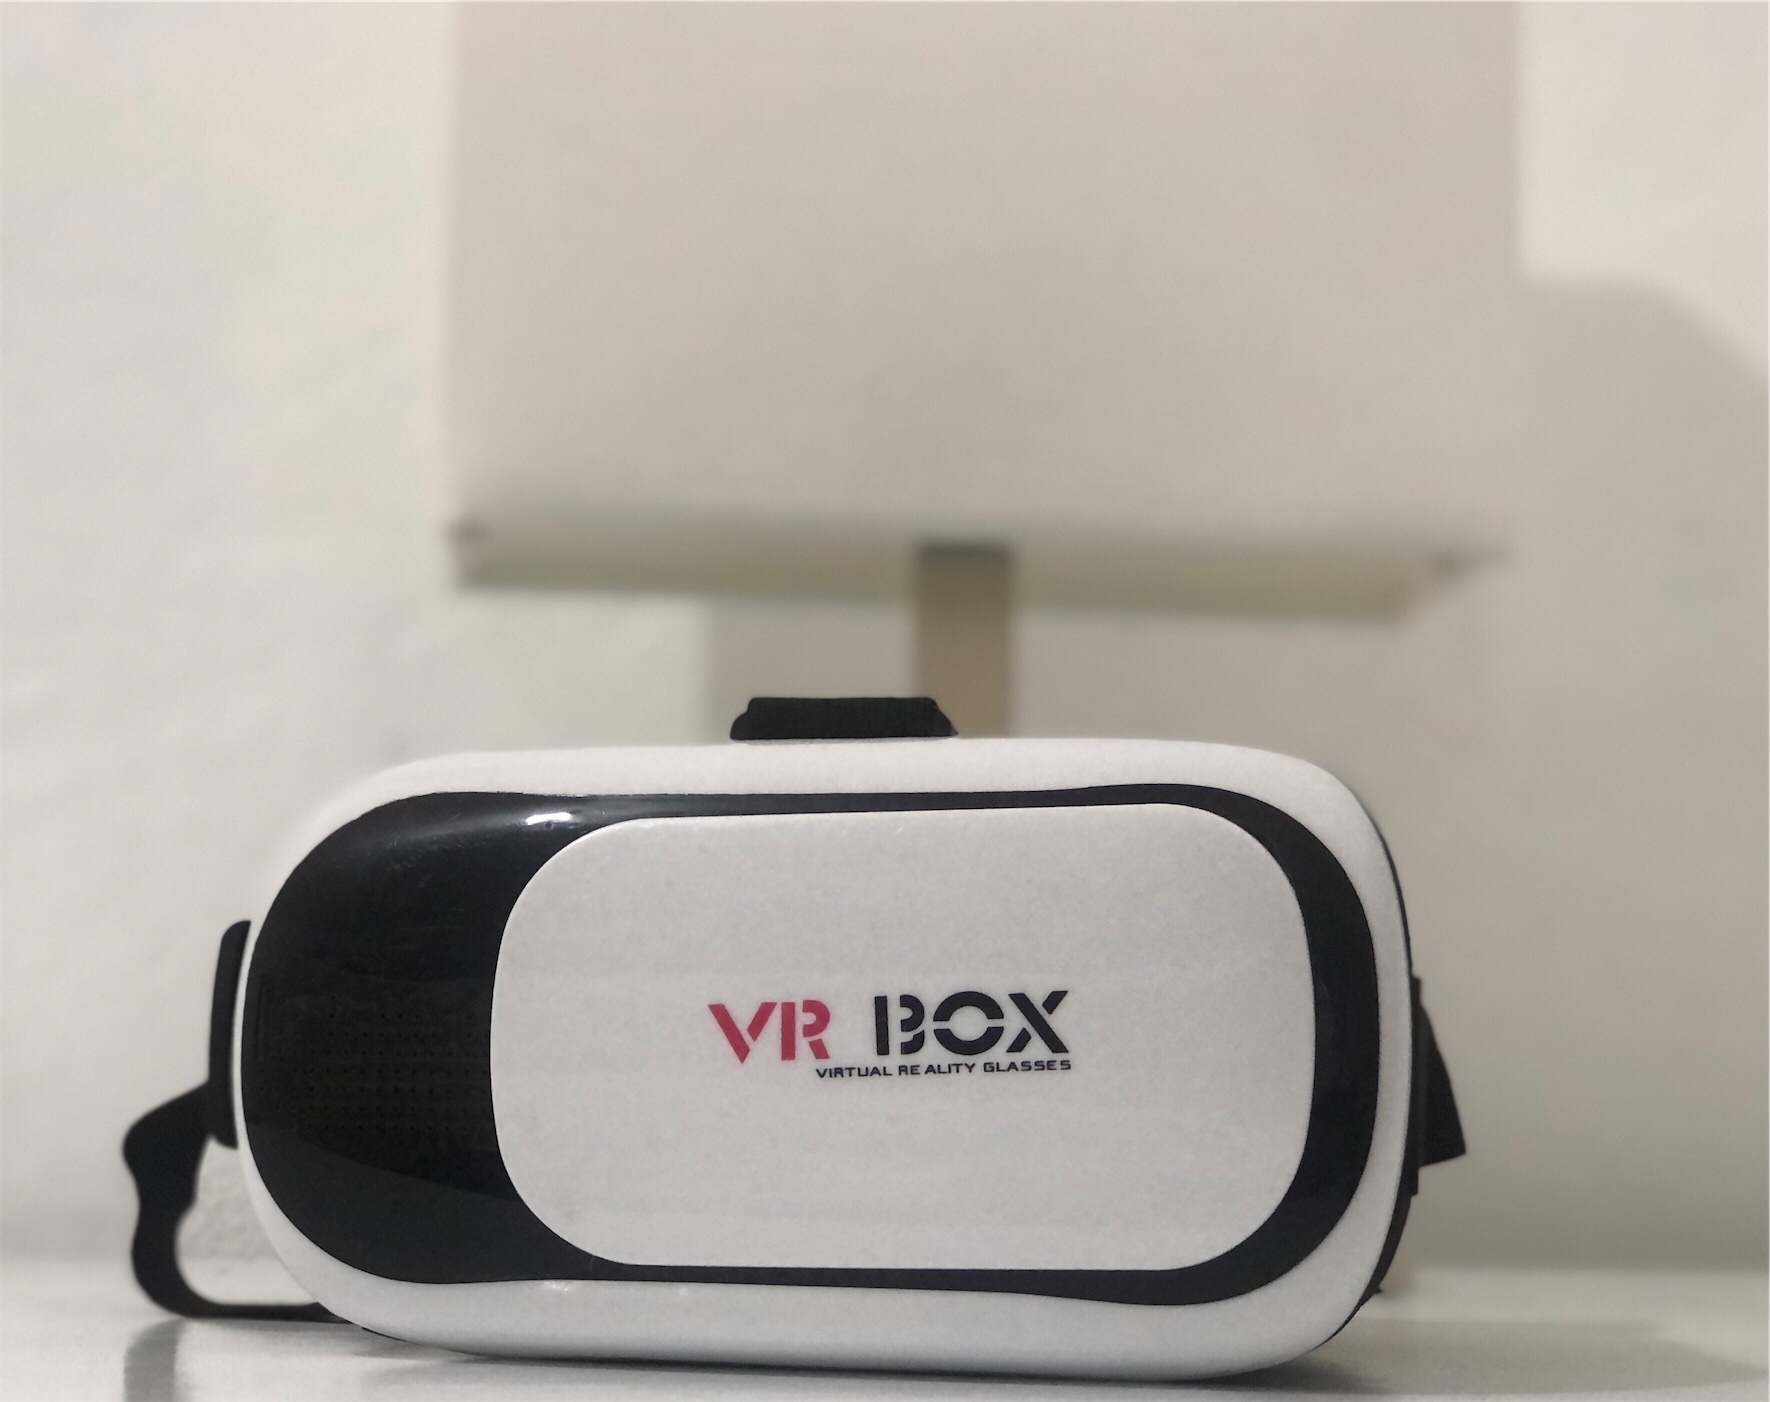 consolas y videojuegos - VR BOX